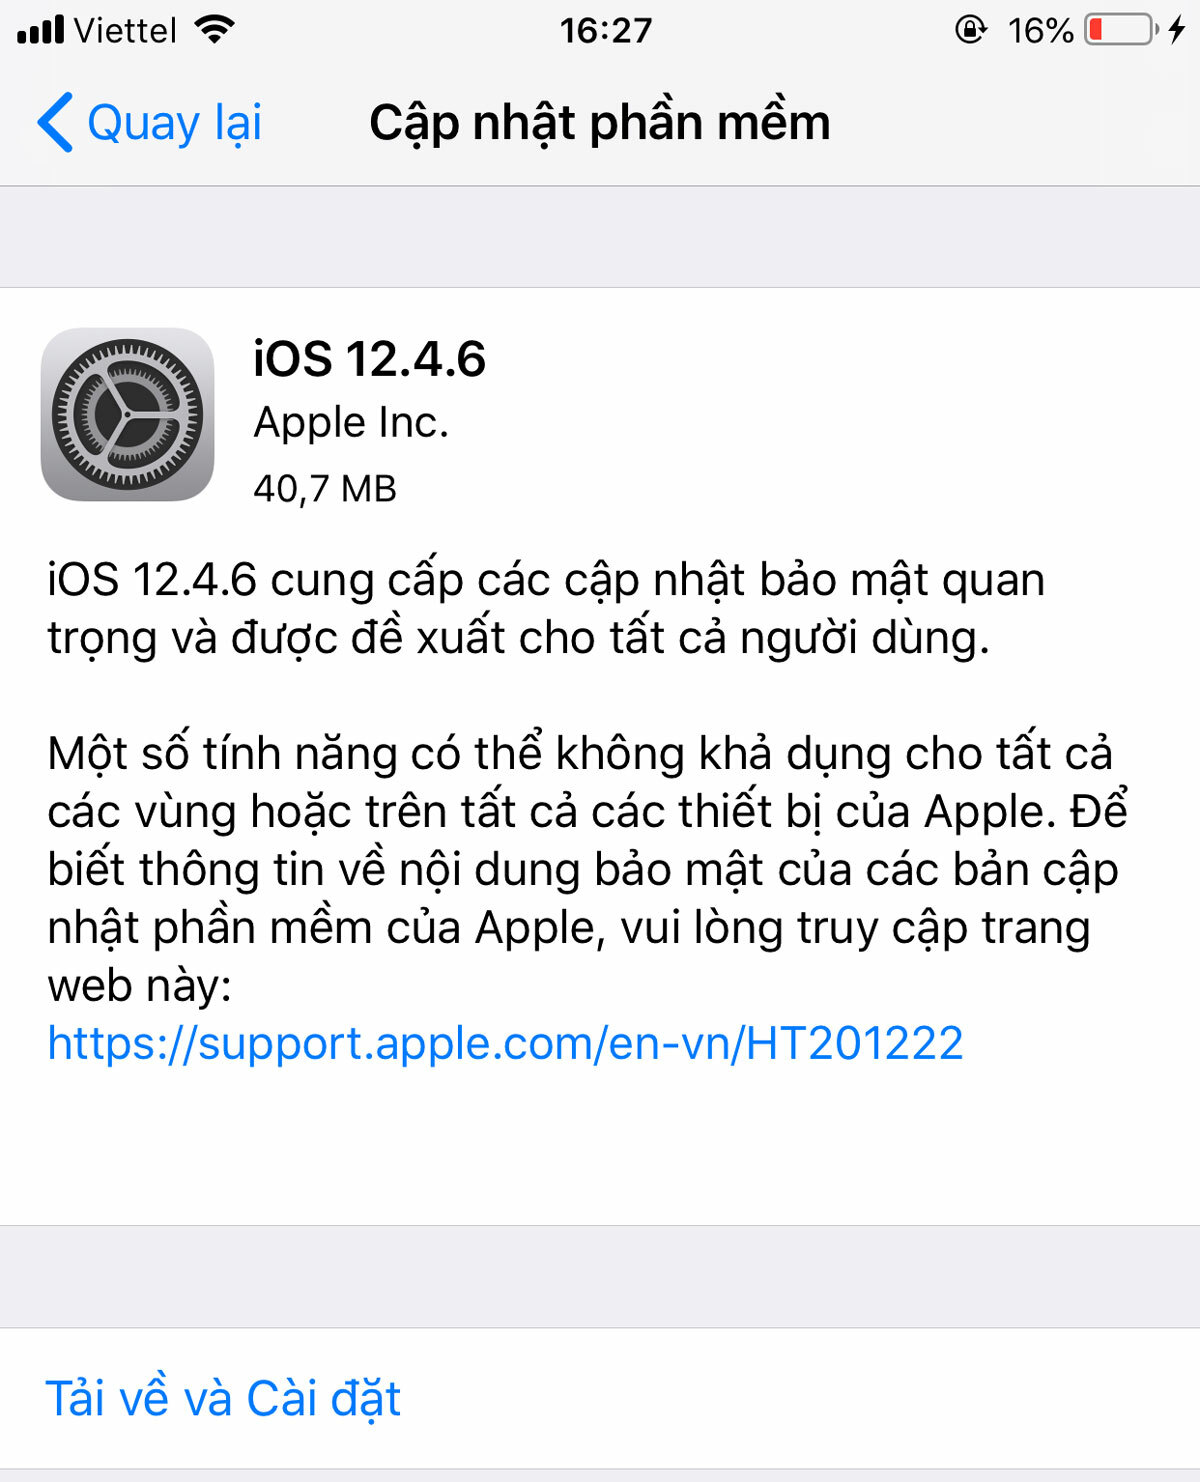 iPhone đời cũ được
Apple cập nhật iOS 12.4.6 mới, đây là các thay đổi trên bản
iOS này